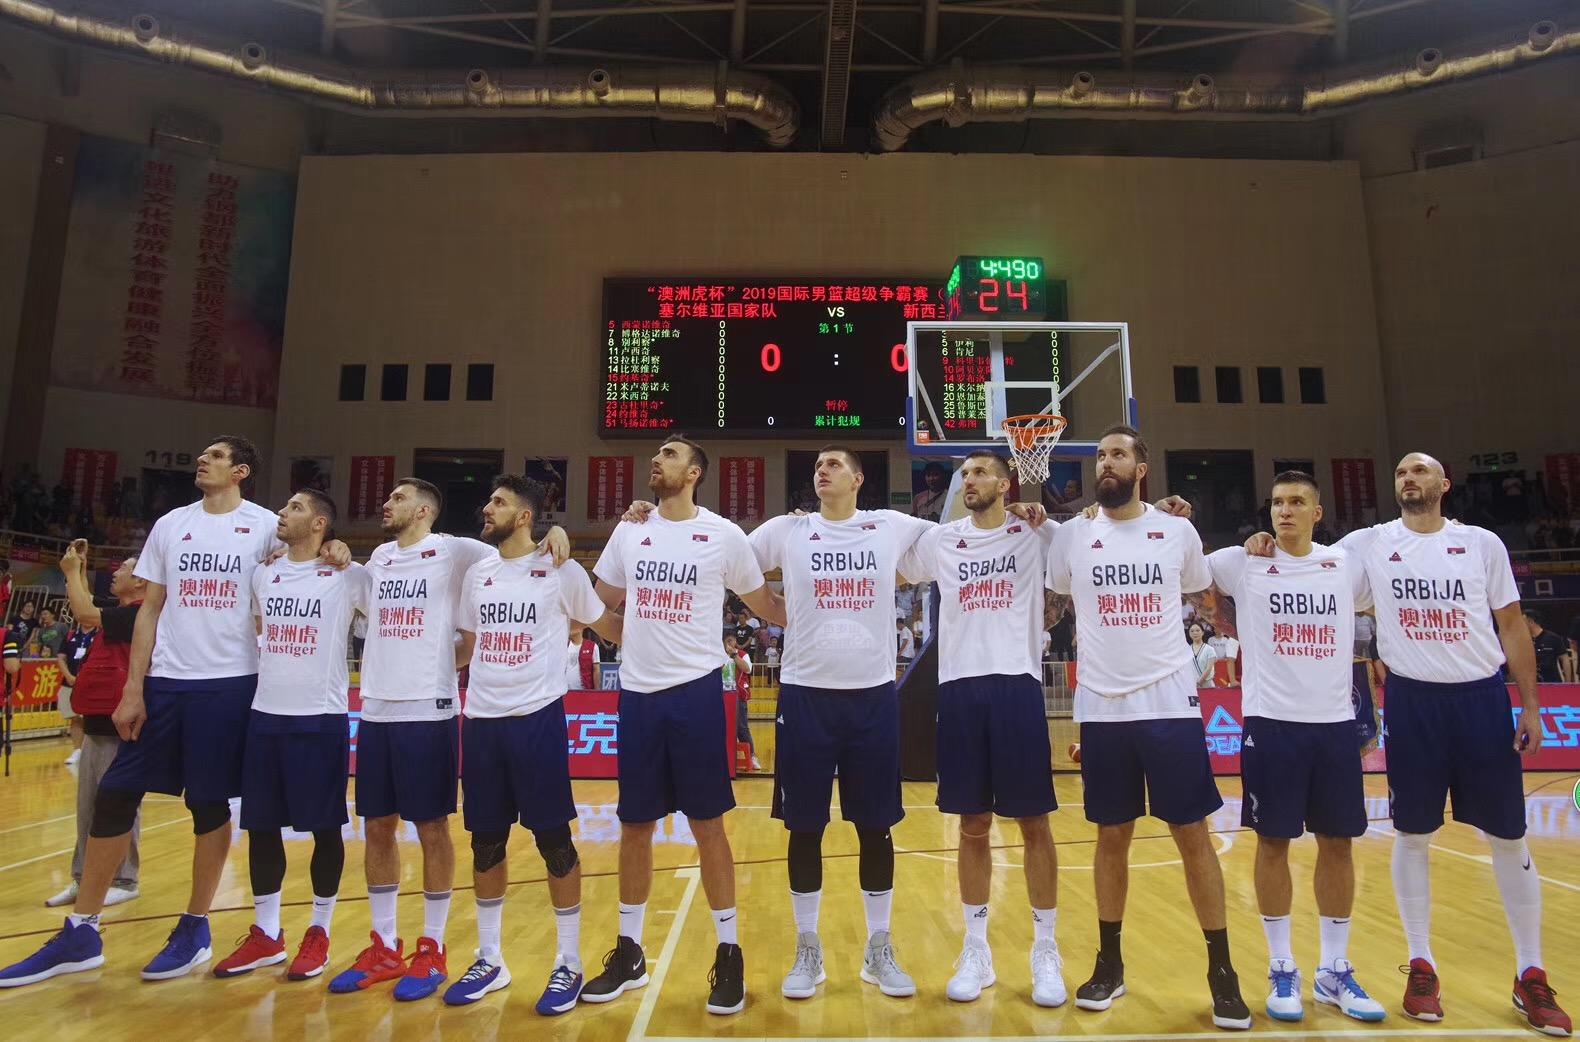 毫无疑问塞尔维亚篮球队应该是除了美国之外篮球水平最高的国家